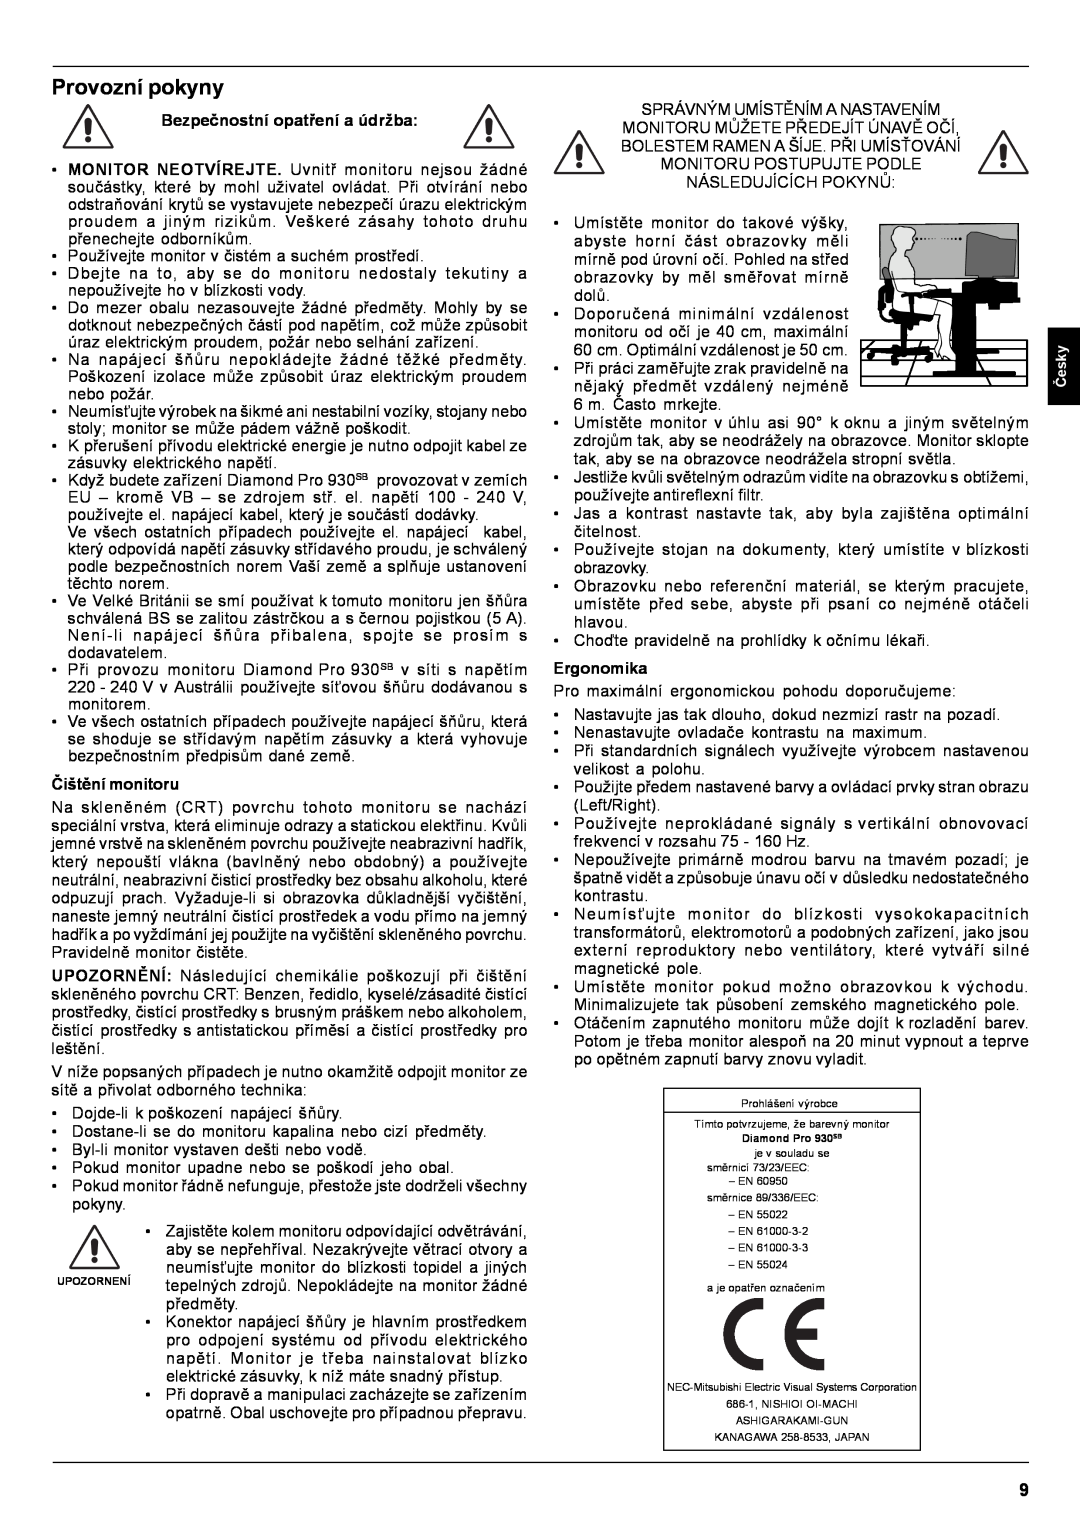 Mitsubishi Electronics Pro 930SB user manual Provozní pokyny, Bezpečnostní opatření a údržba, Čištění monitoru, Ergonomika 